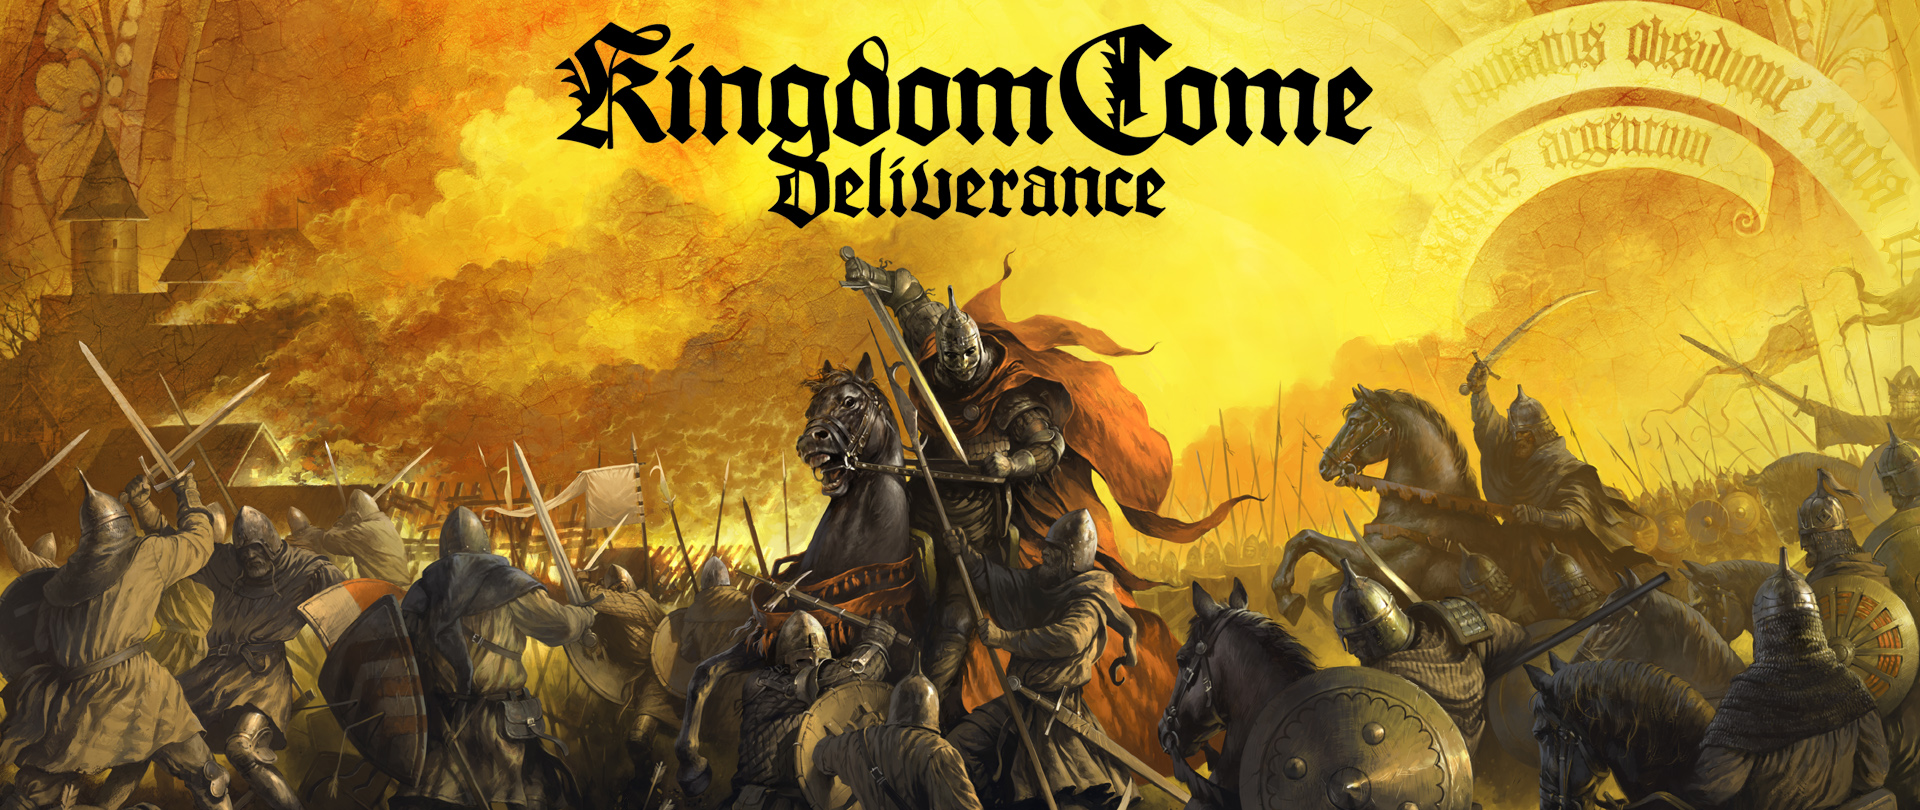 «Aventuras Amorosas», el nuevo DLC de Kingdom Come: Deliverance estrena nuevo tráiler | Disponible el próximo 16 de octubre